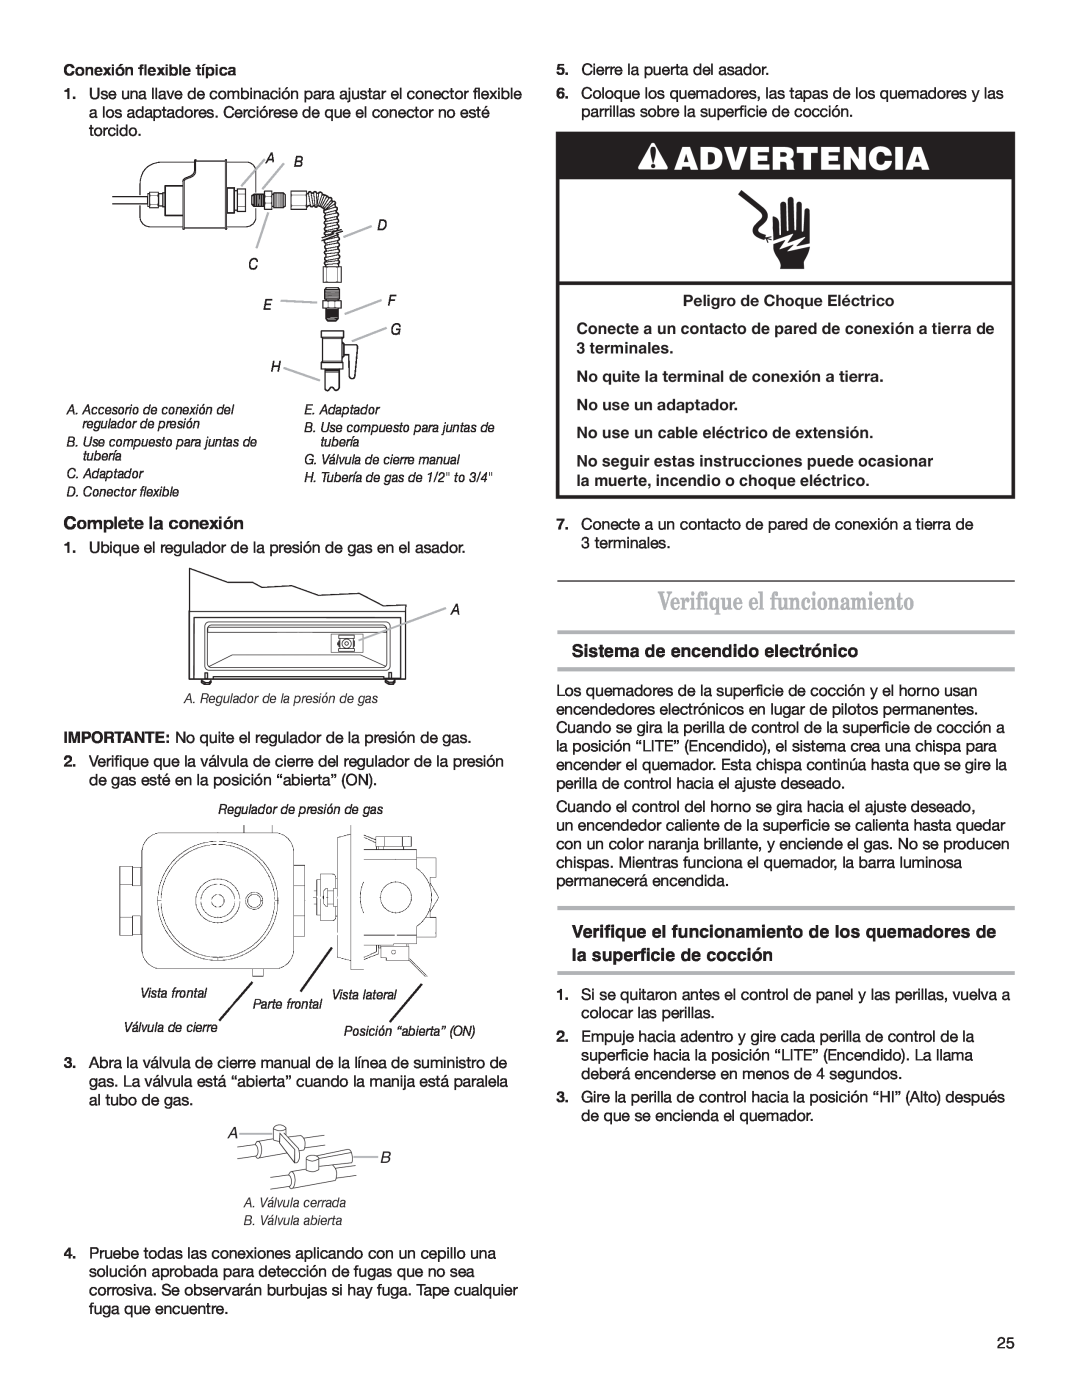 Whirlpool W10153329A Verifique el funcionamiento, Advertencia, Complete la conexión, Sistema de encendido electrónico 